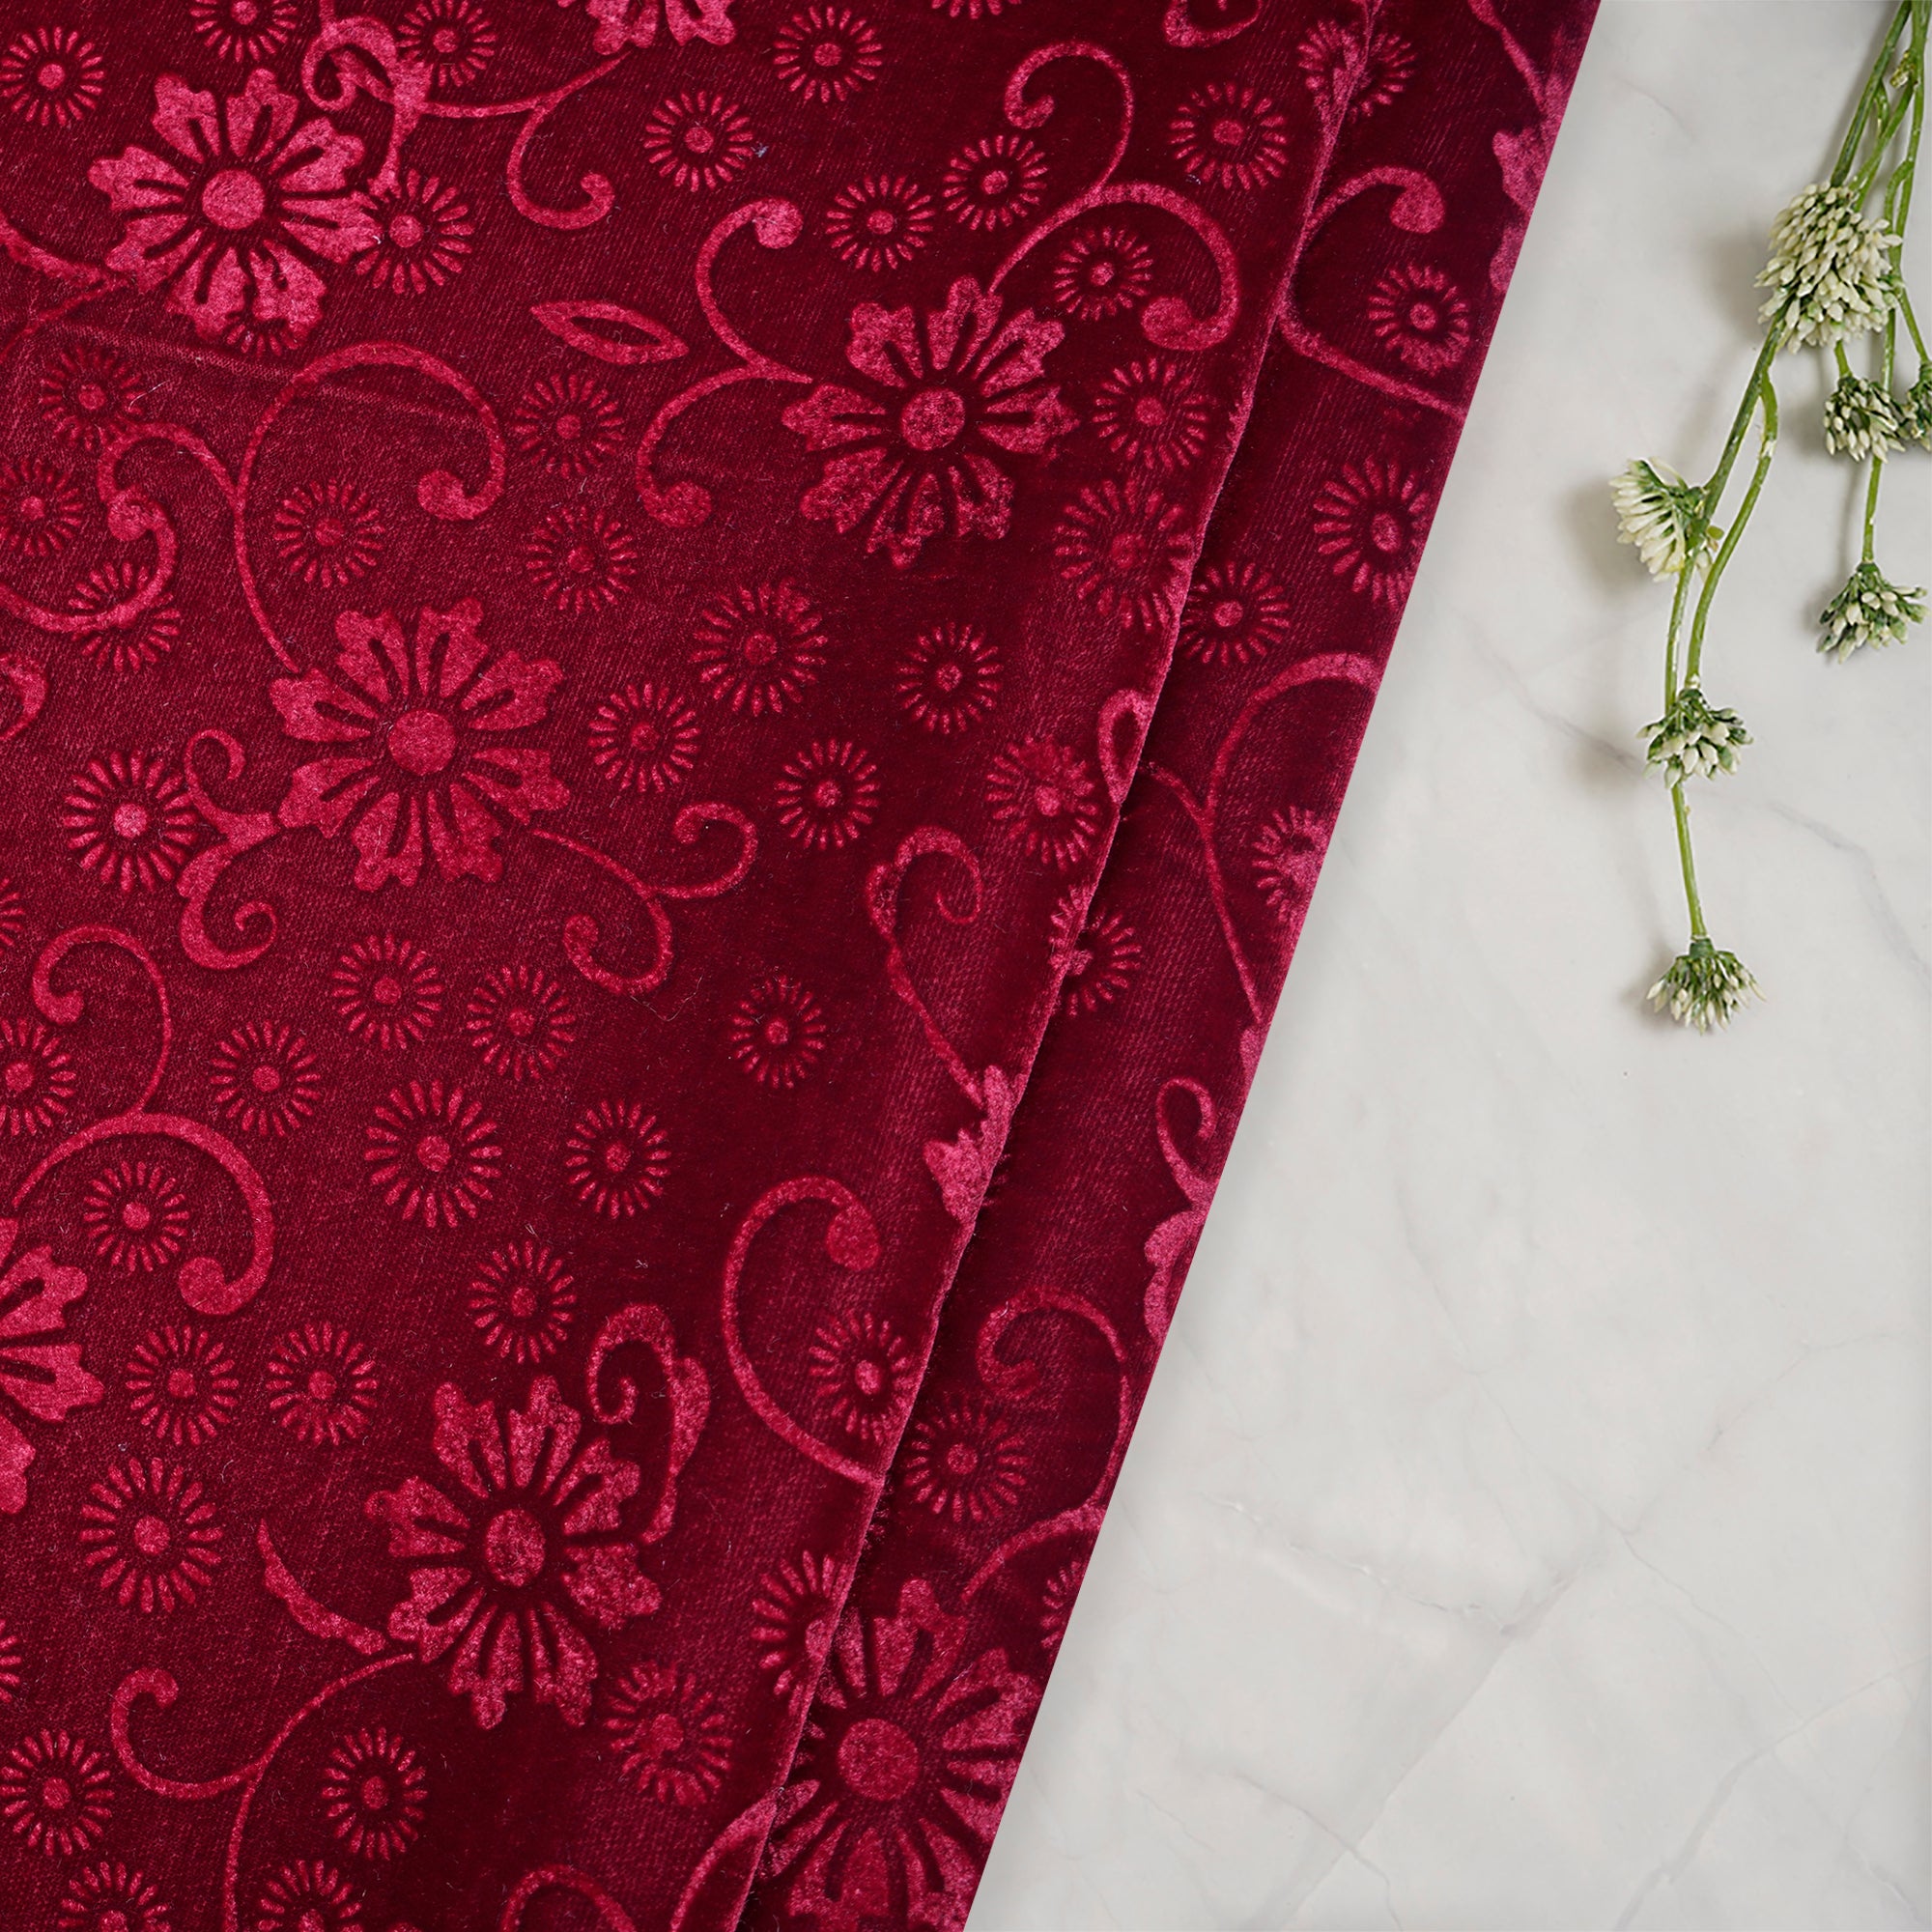 Velvet Fabric - Buy Luxury Velvet Fabric Online in india